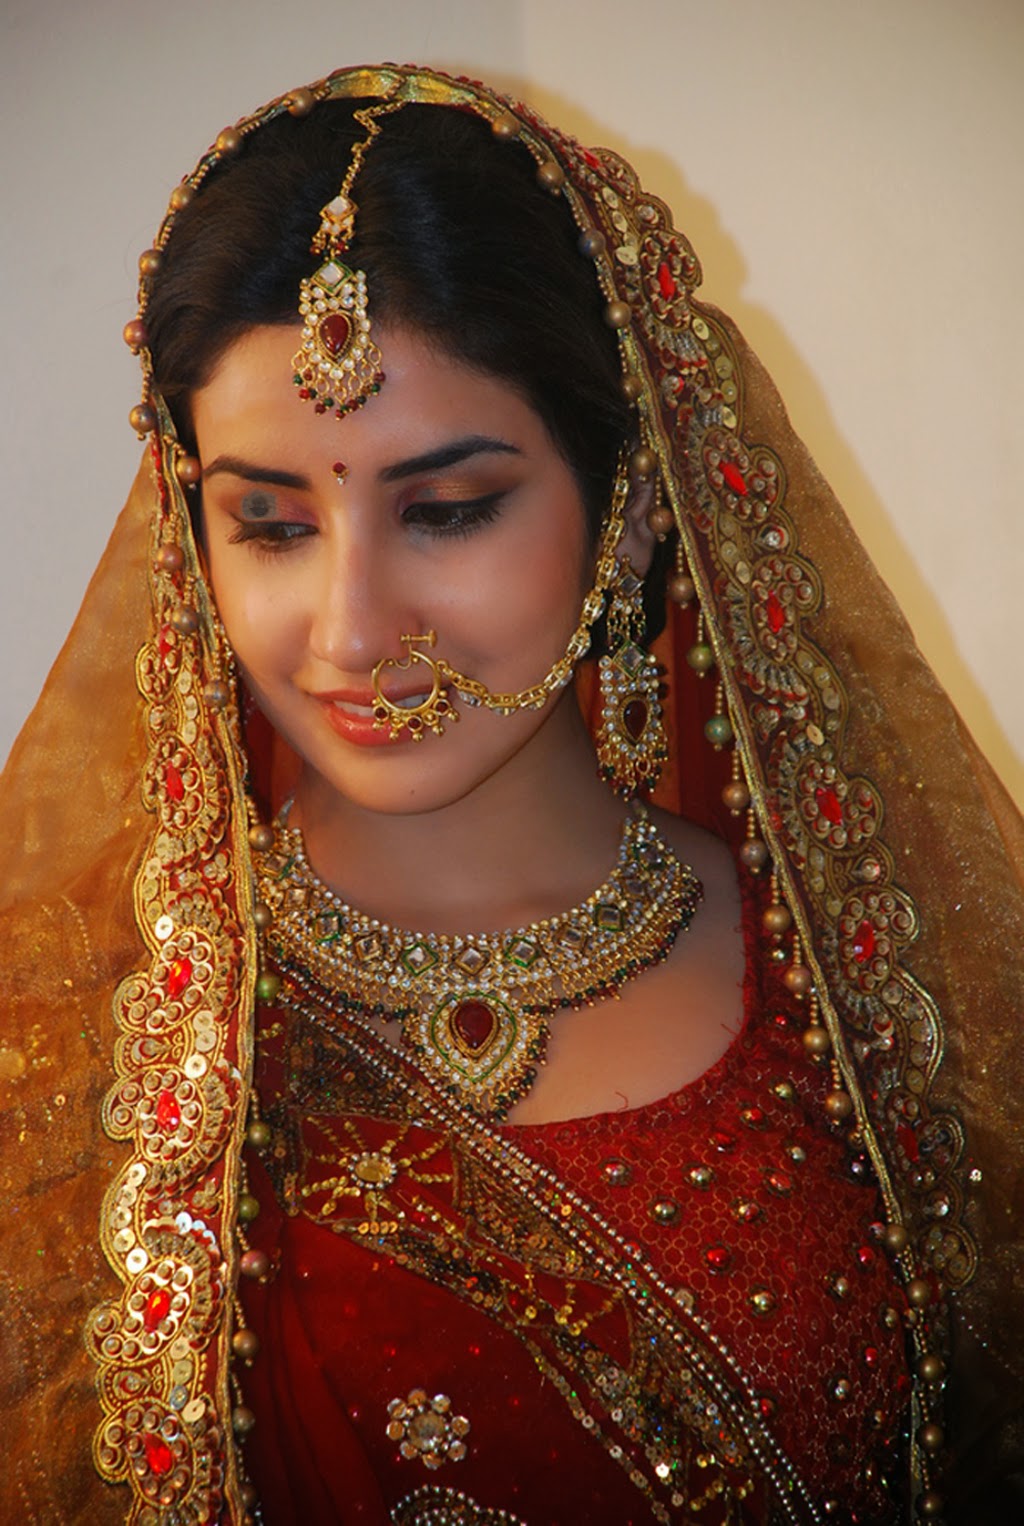 parul name wallpaper,bride,tradition,jewellery,sari,fashion accessory